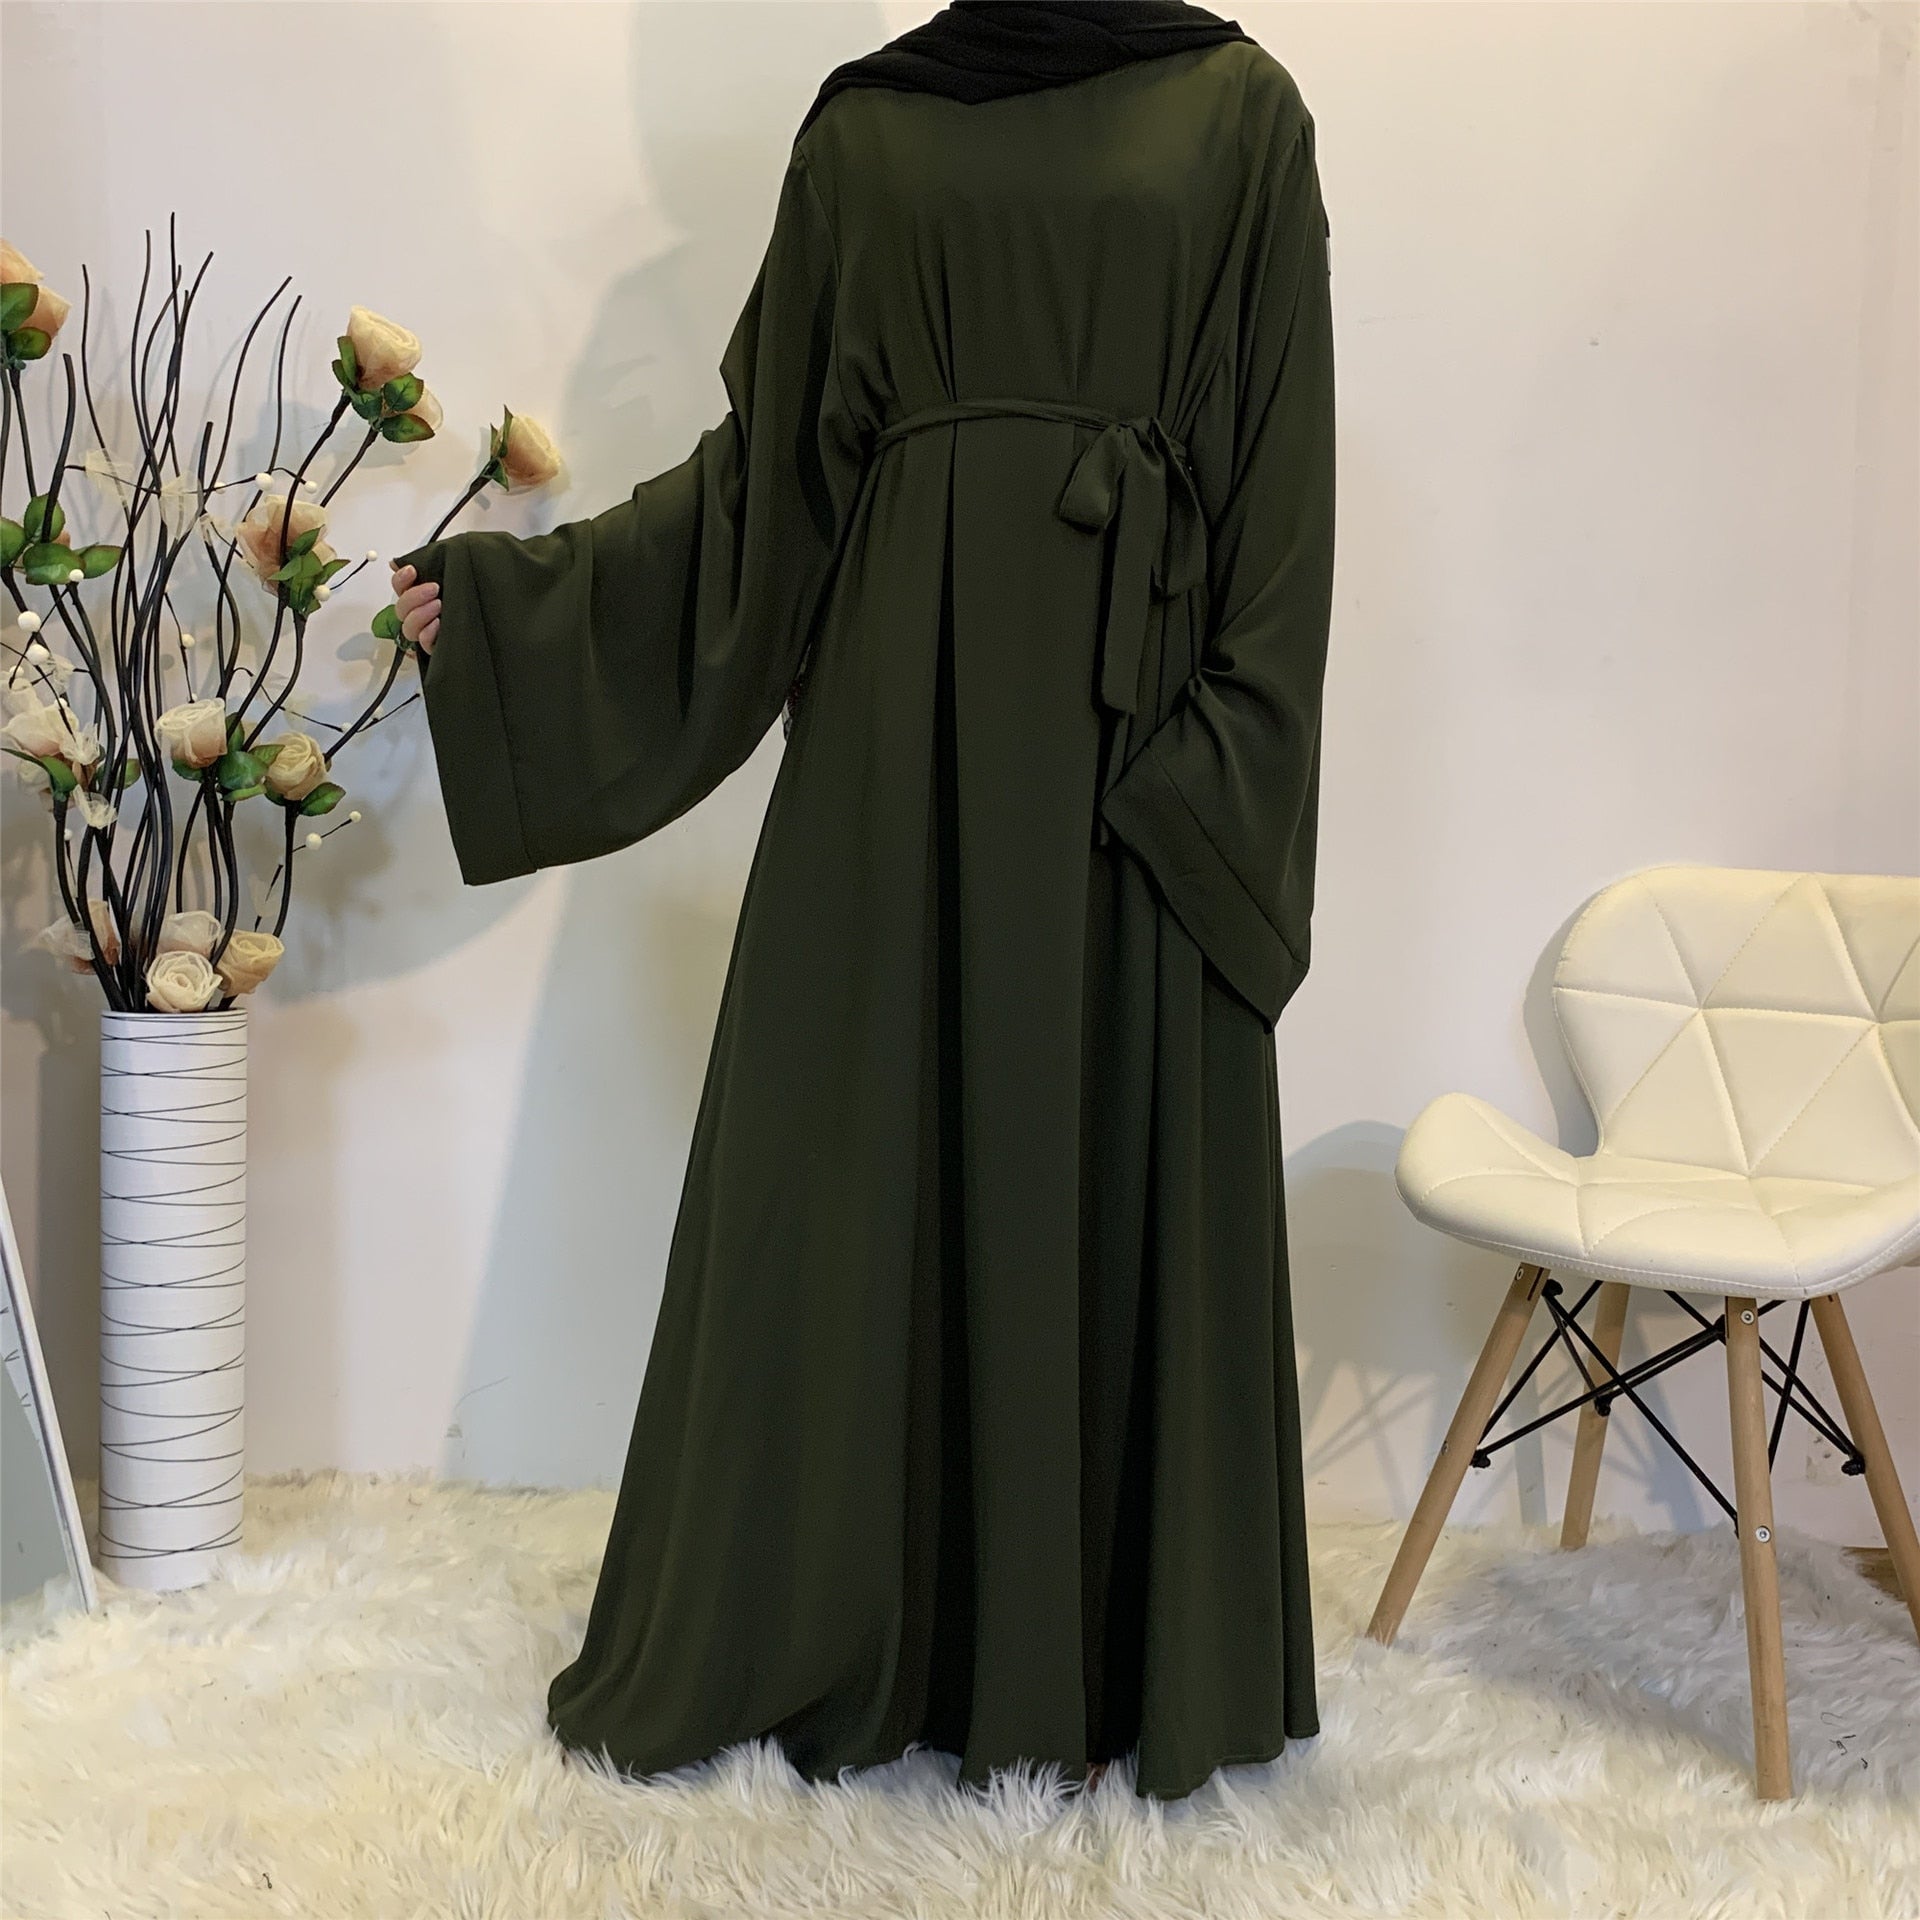 Muslim Fashion With Sashes Islam Clothing Abaya